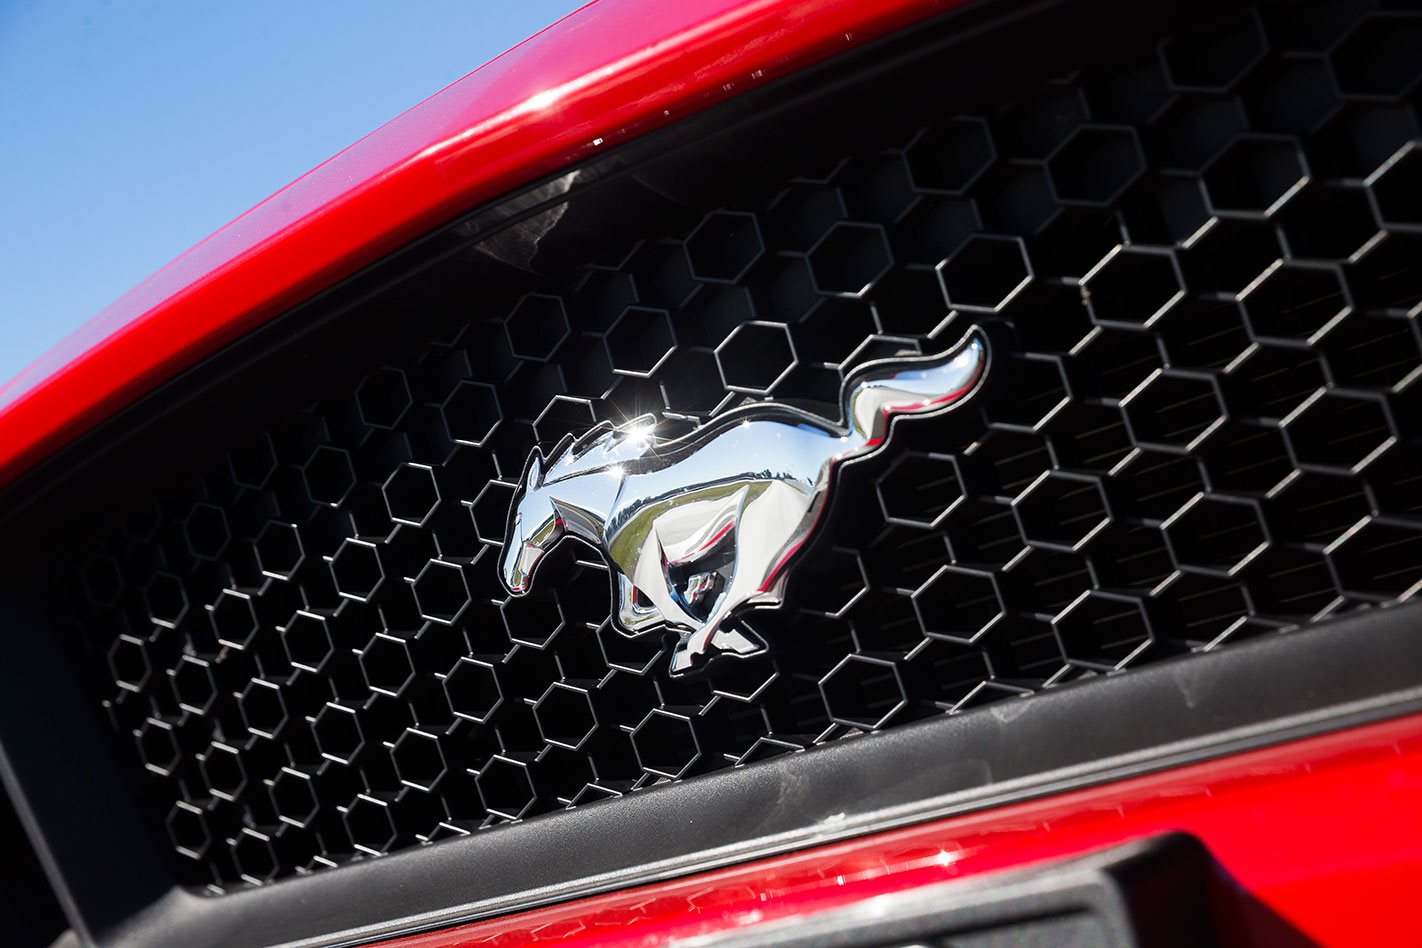 RG1-Ford-Mustang-Hybrid-confirmed-for-2020.jpg